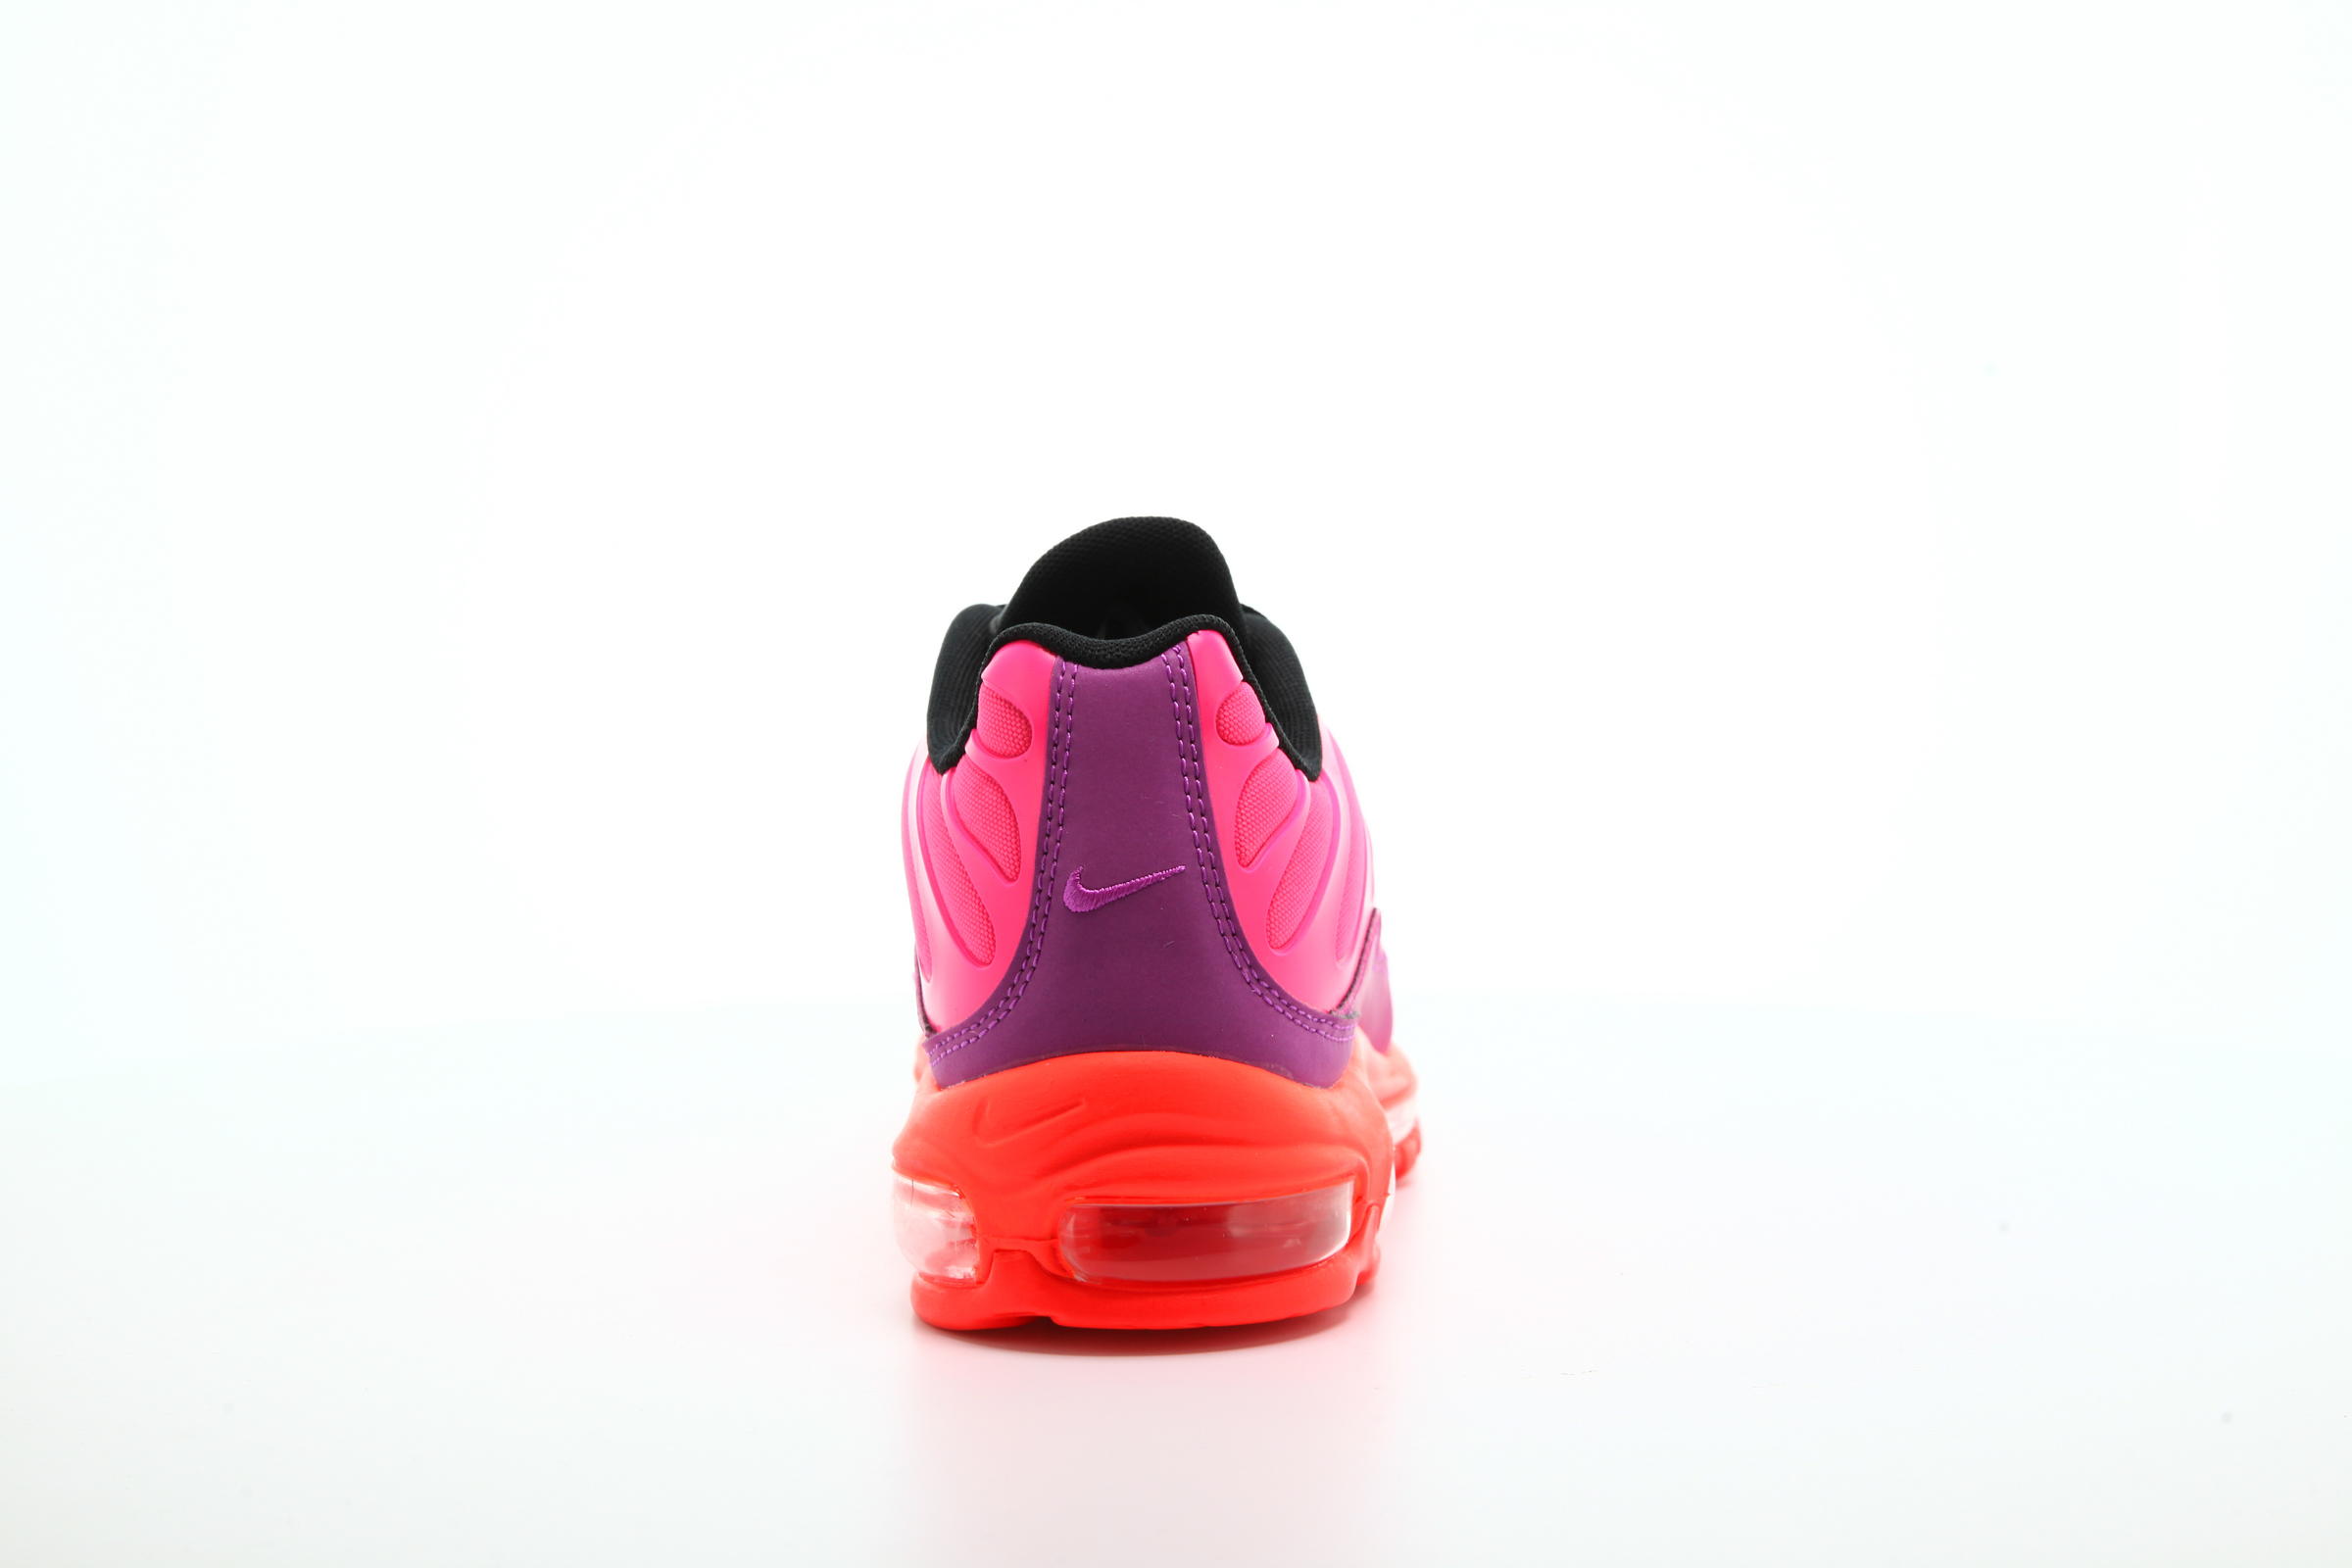 Nike Air Max 97 Plus "Racer Pink"